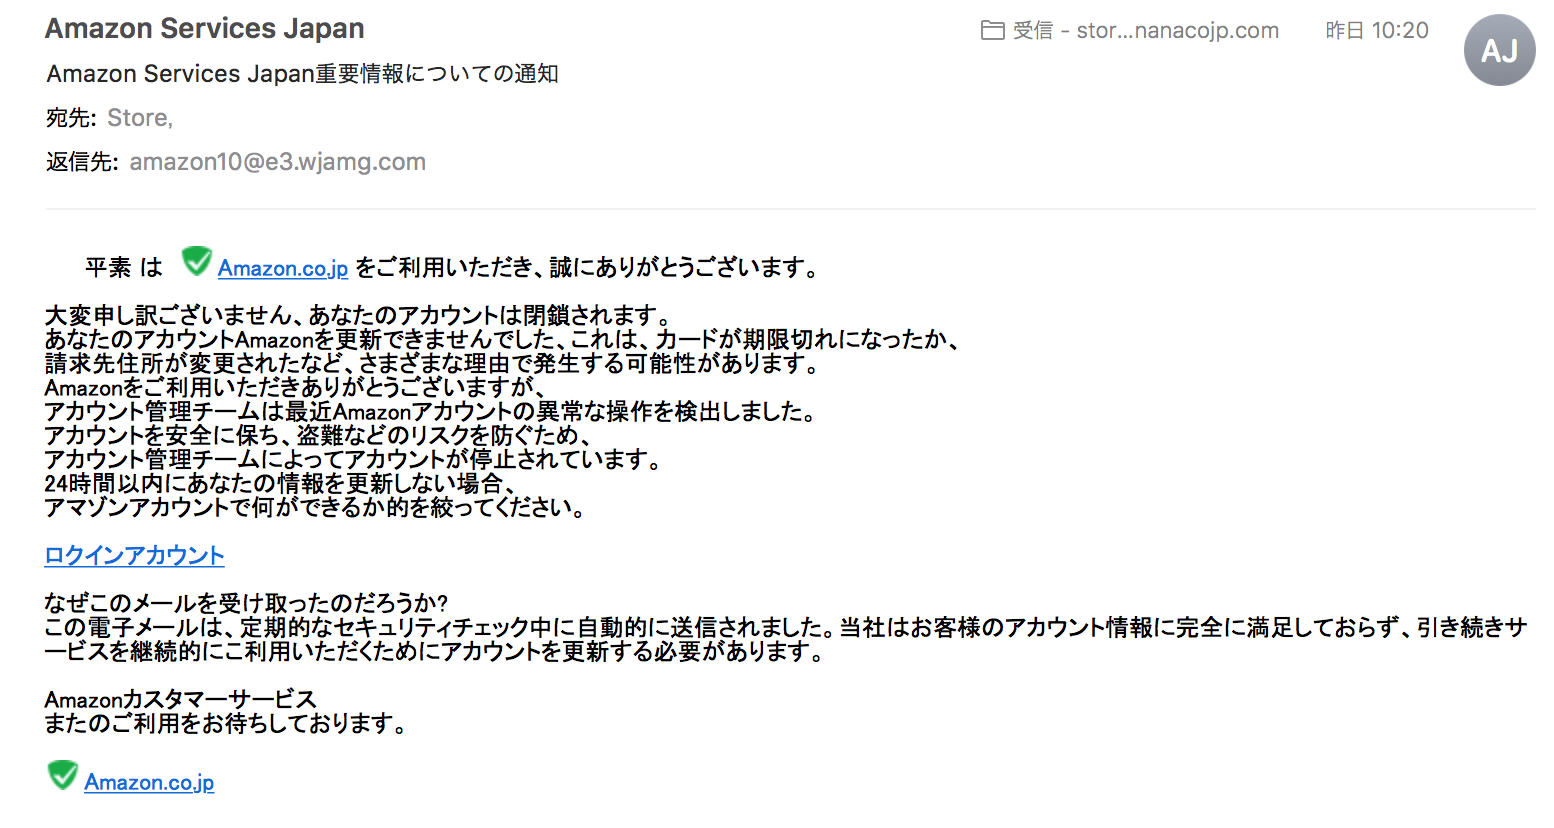 Amazon Service Japan からの迷惑メールにご注意ください Nanaco Japan Llc 茨城県 神栖鹿嶋潮来 のweb制作 集客マーケティング をサポート